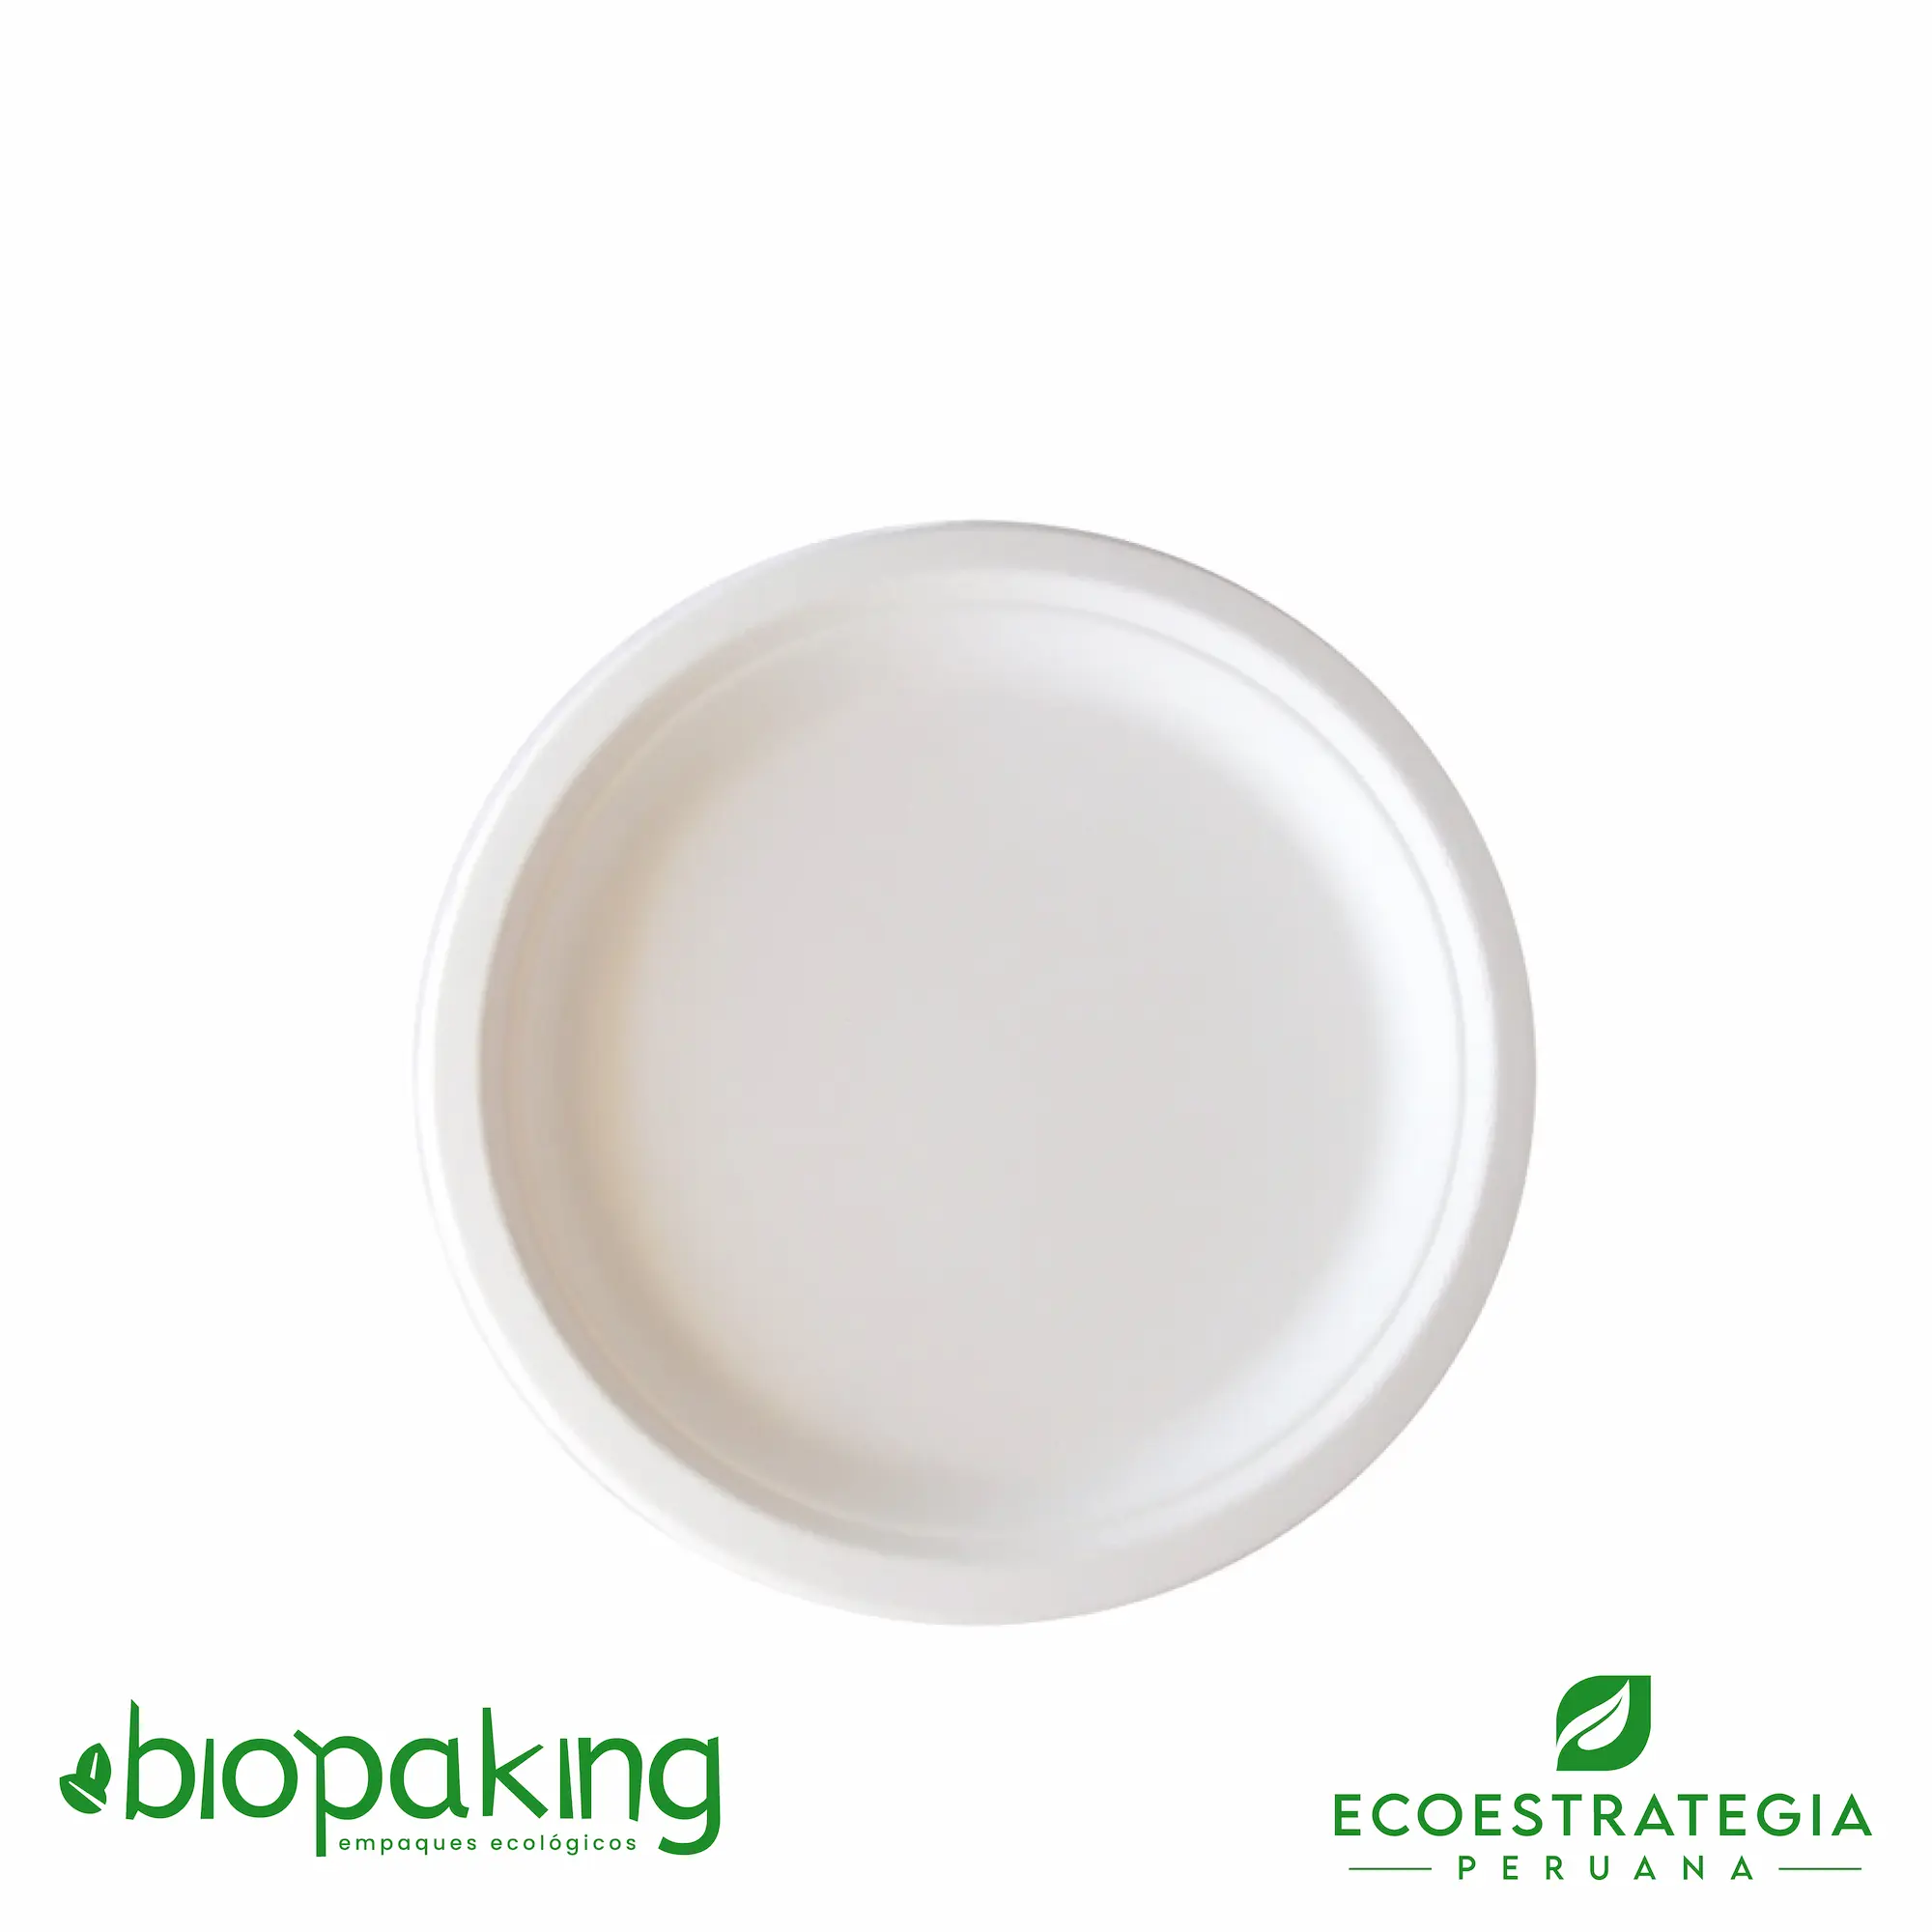 Este plato de 22 cm, es un producto de materiales biodegradables, hecho a base de fibra de caña de azúcar. Cotiza envases, empaques y tapers bio para comidas